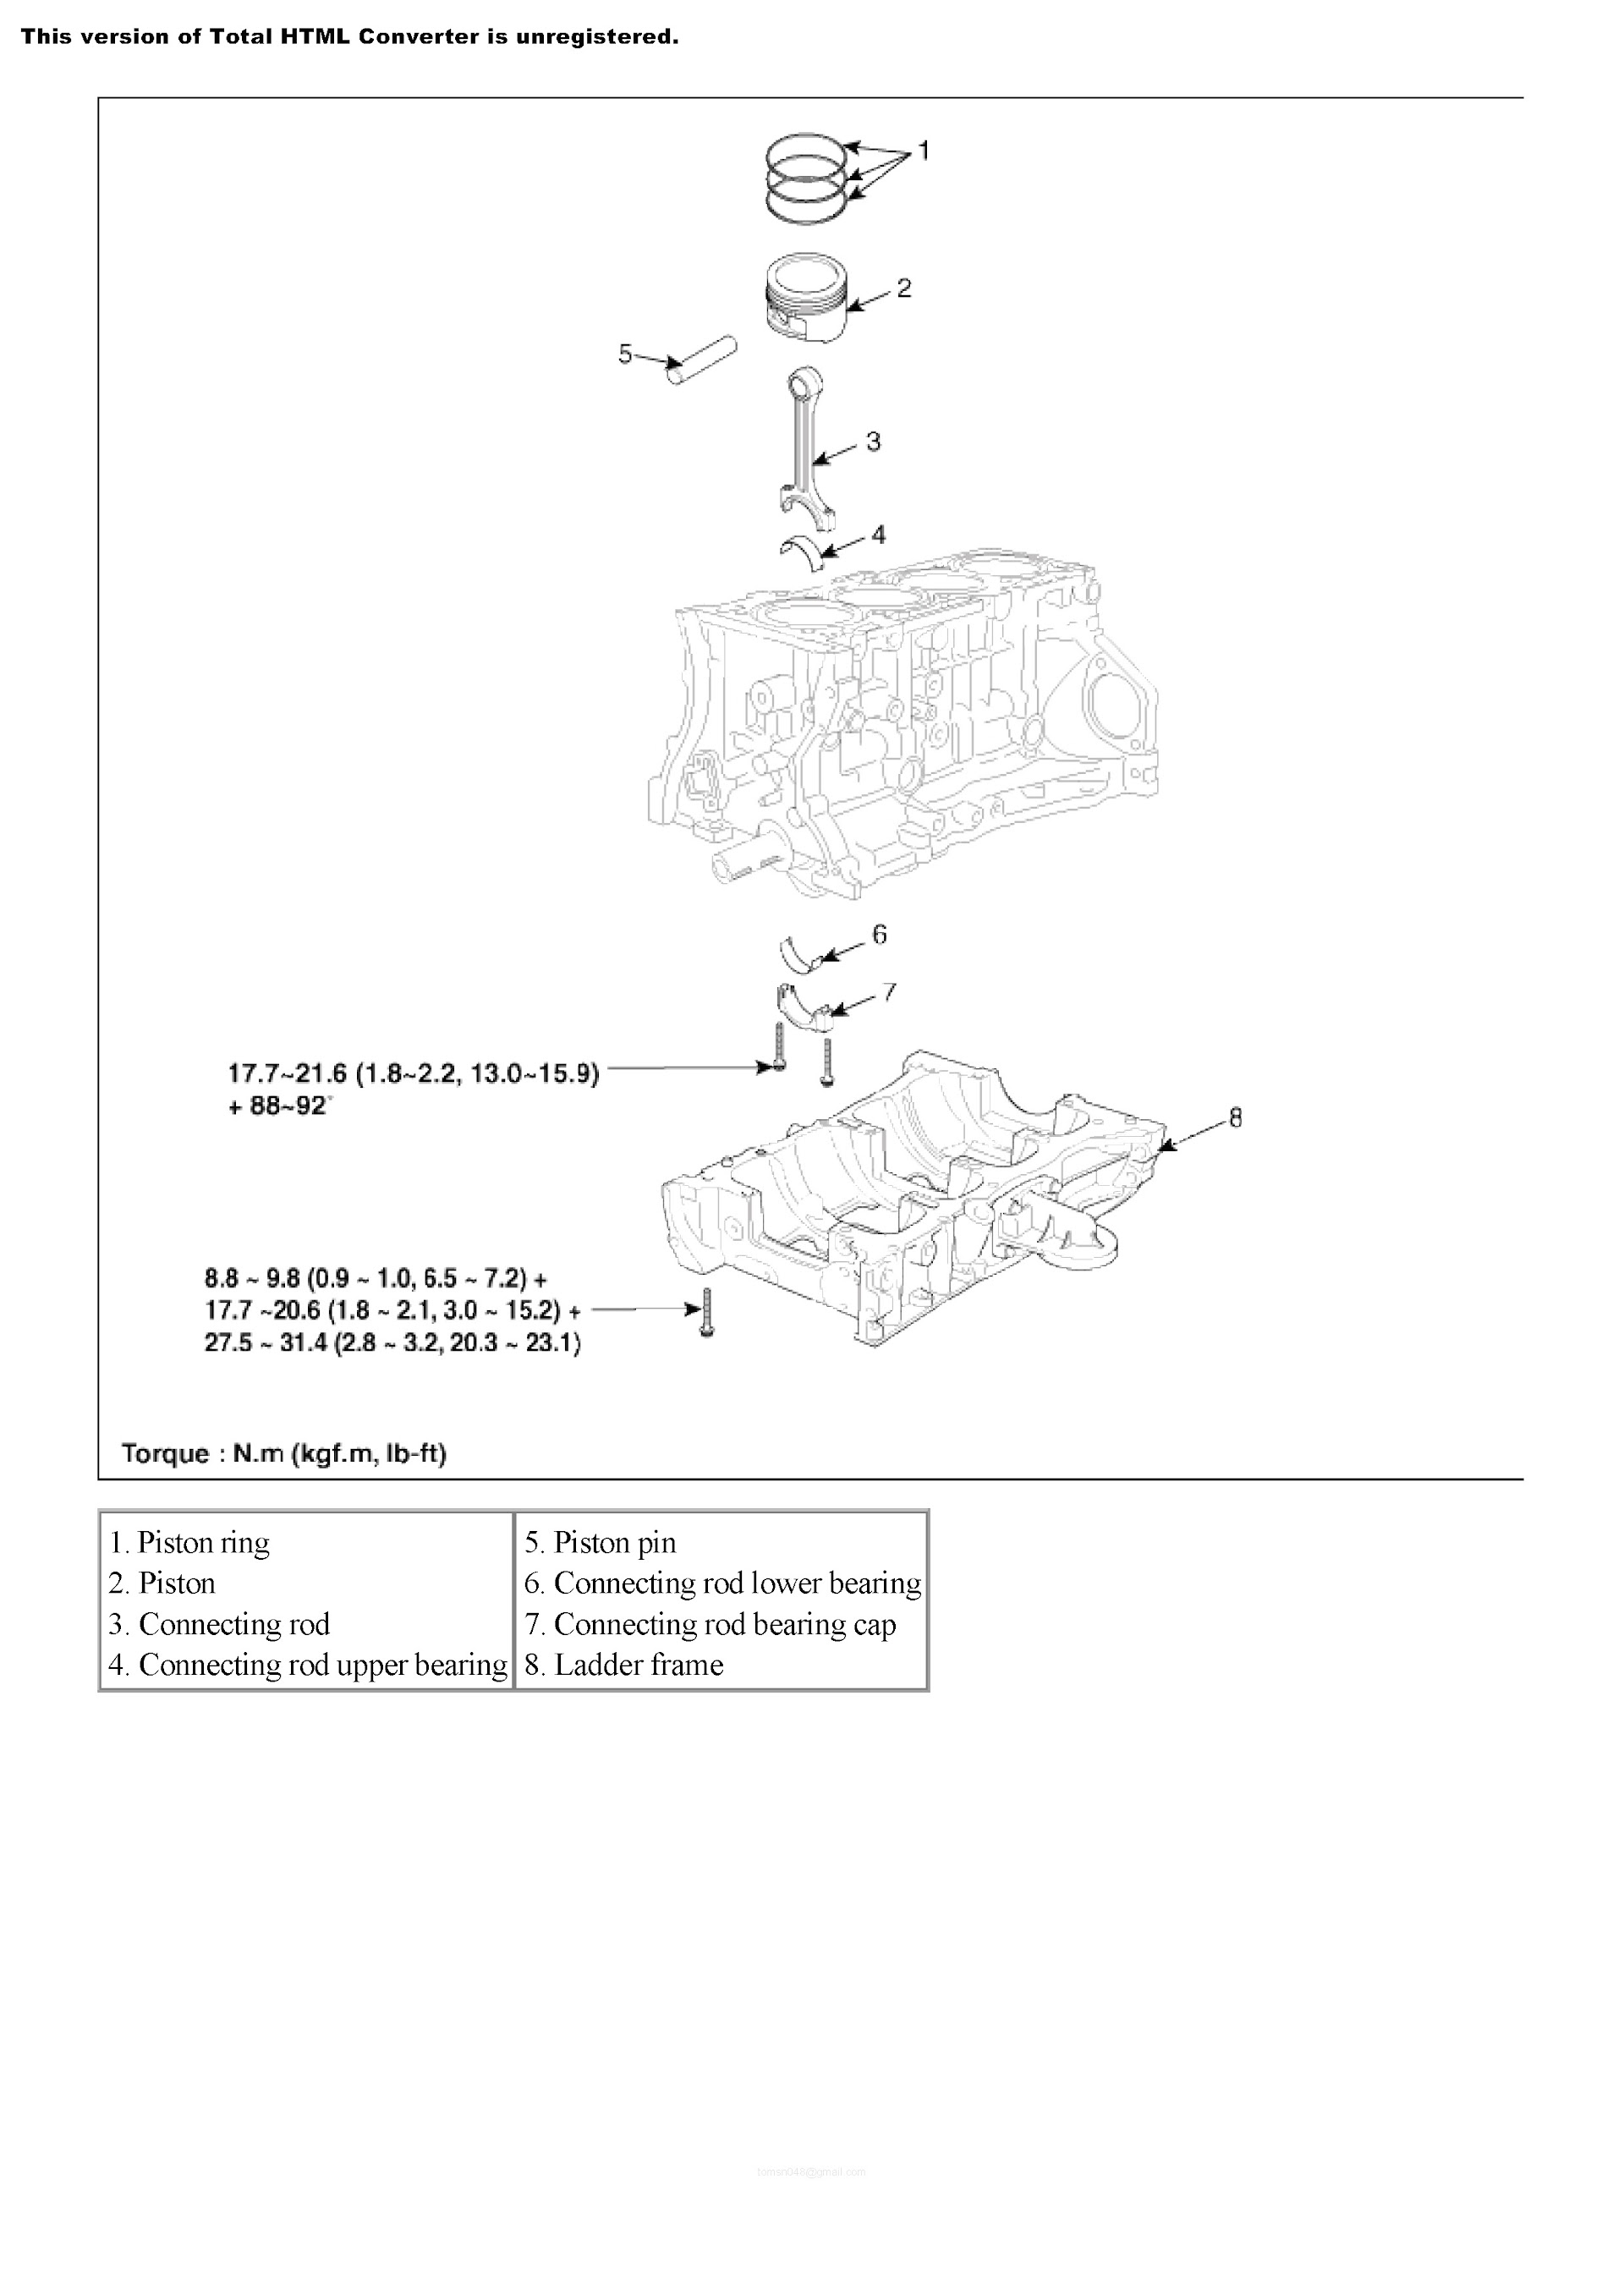 Download 2012 Kia Sorento Repair Manual